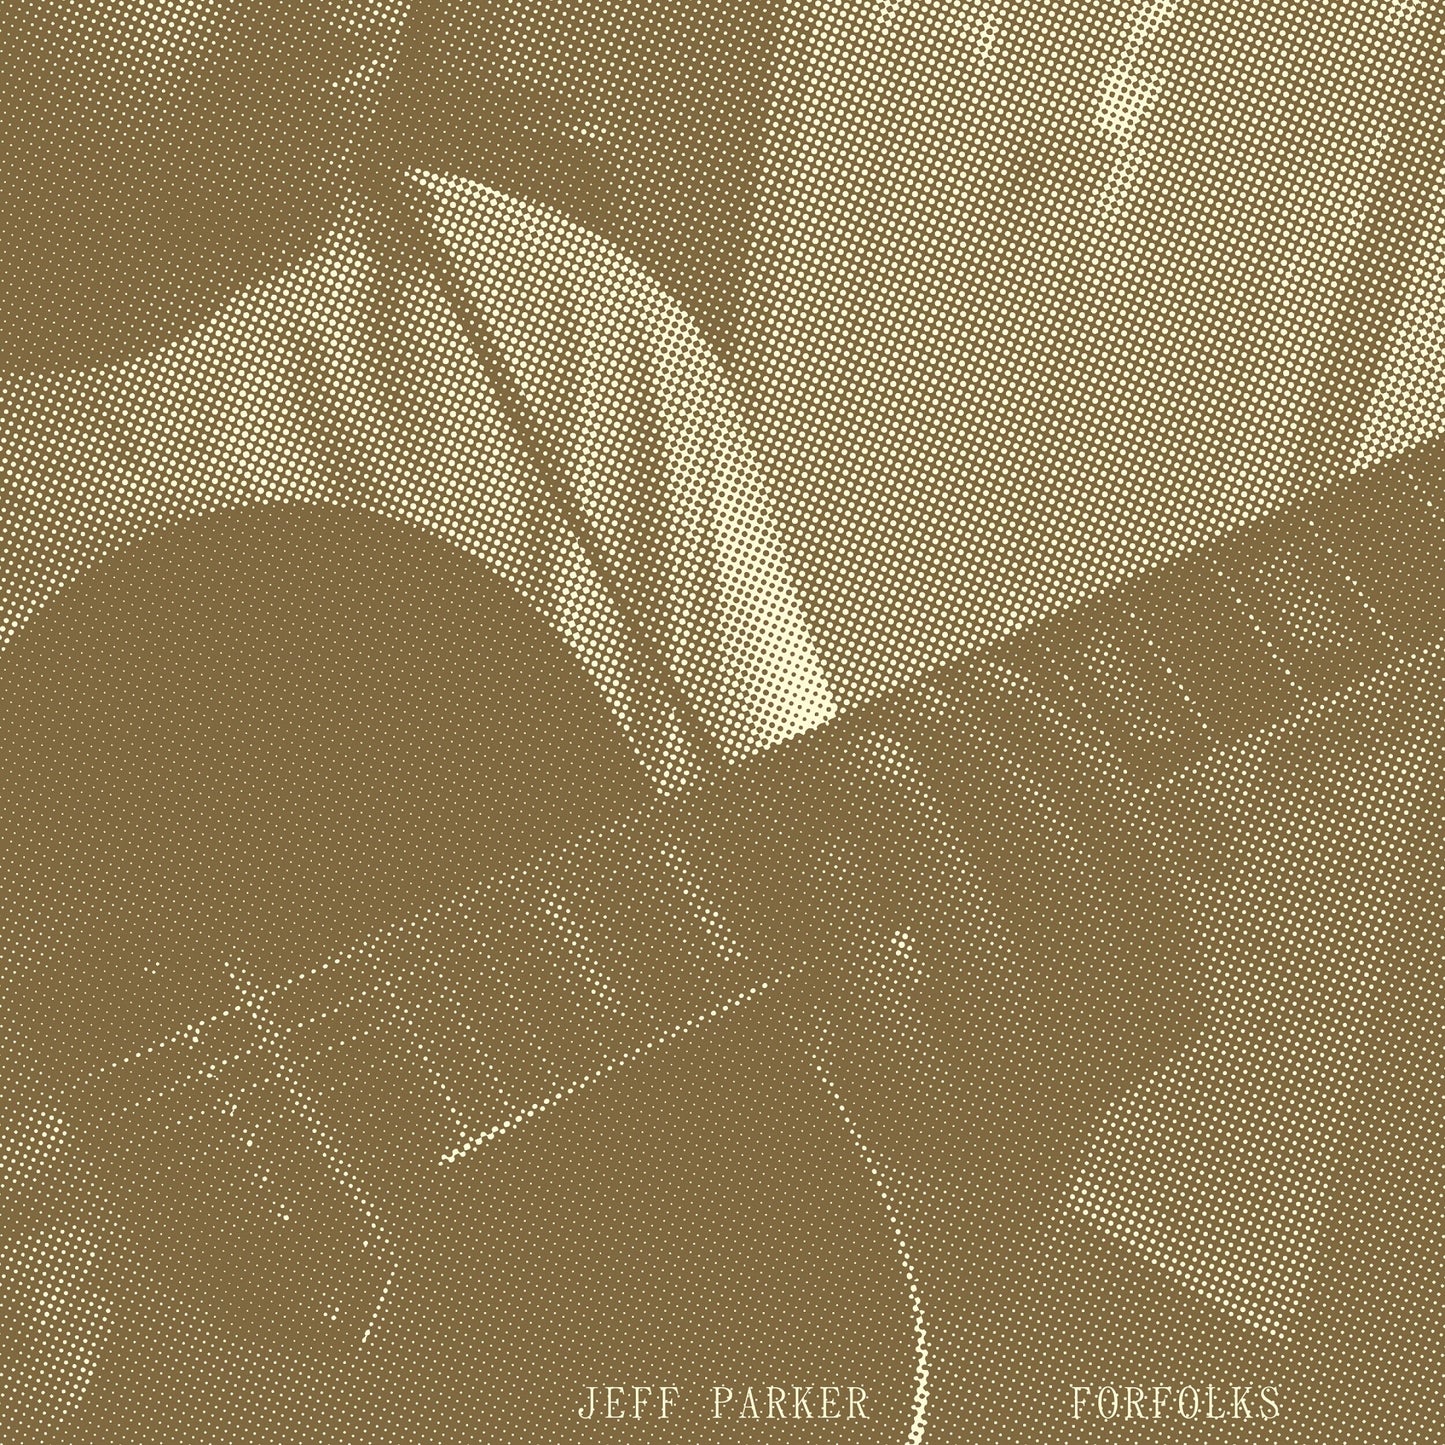 Jeff Parker - Forfolks (Cool Mint Coloured LP) - LP